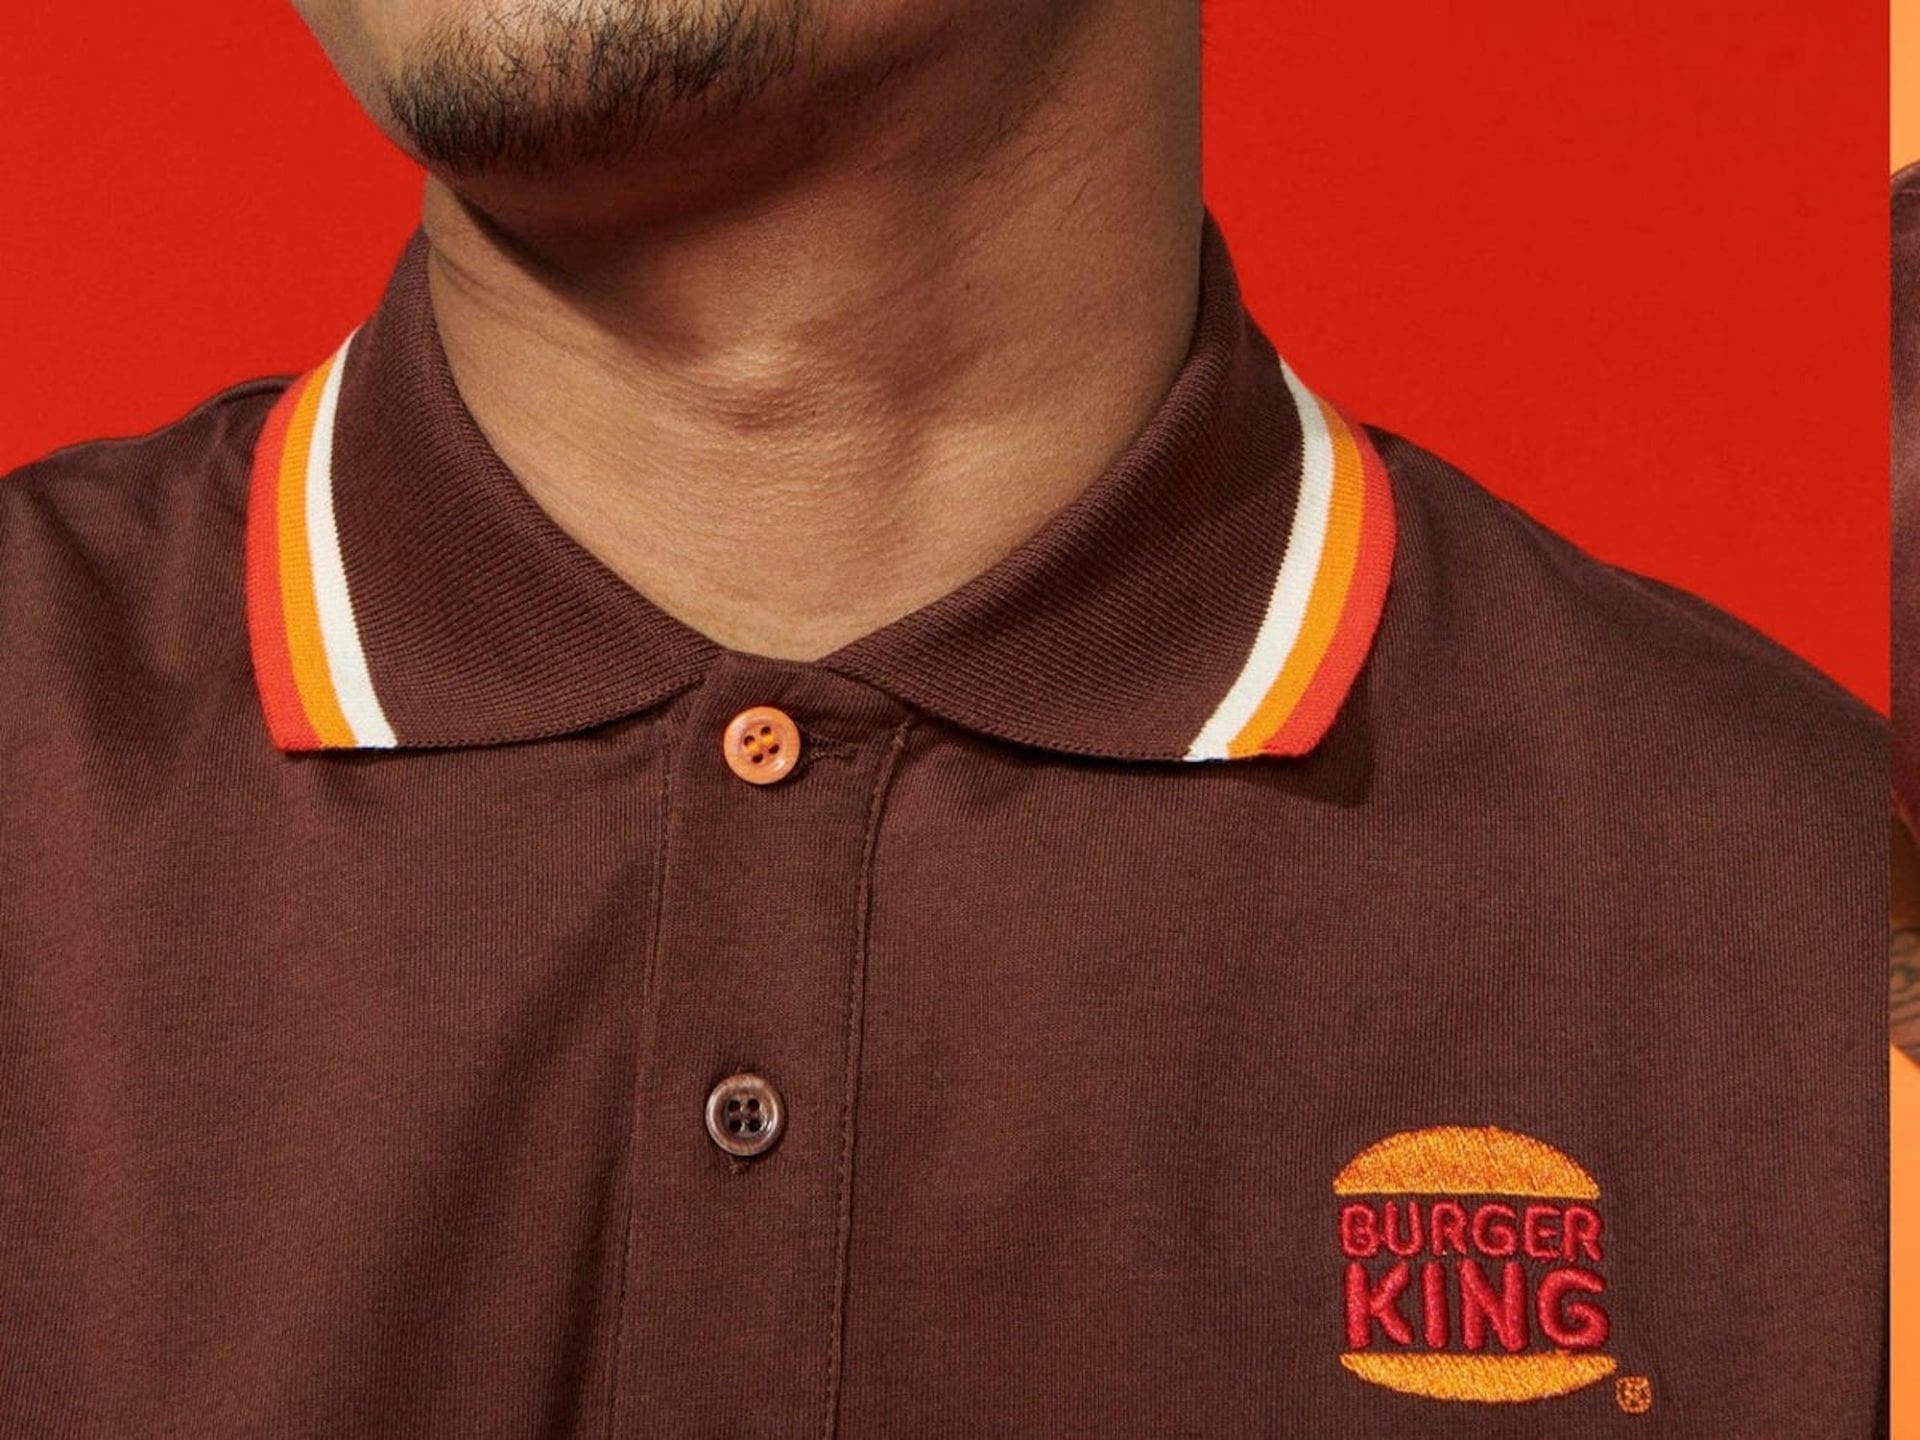 Nouveau branding de Burger King